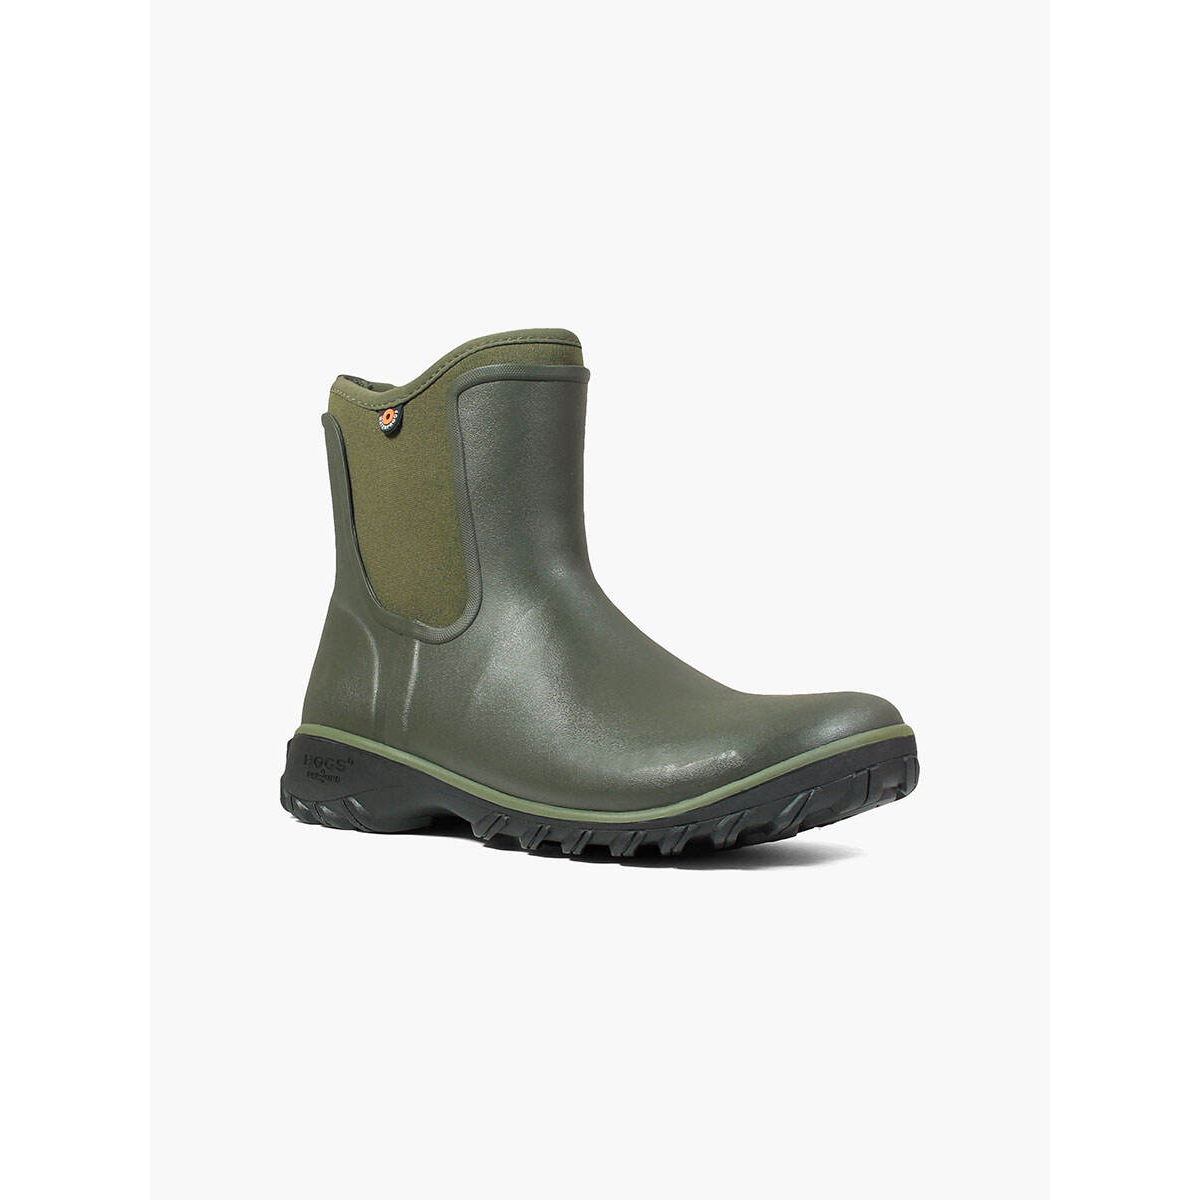 BOGS Women's Sauvie Slip On Waterproof Rain Boots Sage - 72203-306 SAGE - SAGE, 8